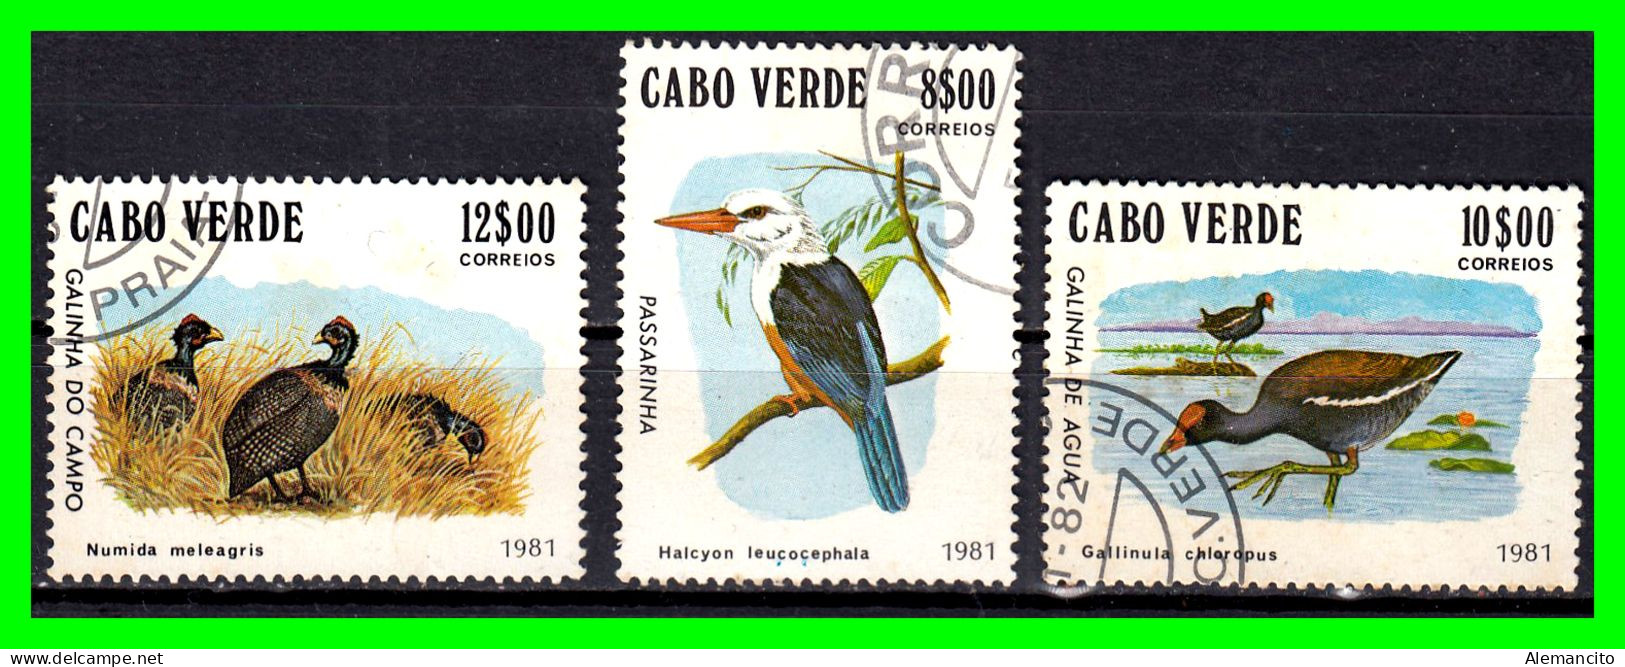 CABO VERDE ( UNION AFRICANA ) - 3 SELLOS  AÑO 1981 PUEDEN AGRUPAR VARIAS COMPRAS EN UN SOLO ENVIO - Zambia (1965-...)